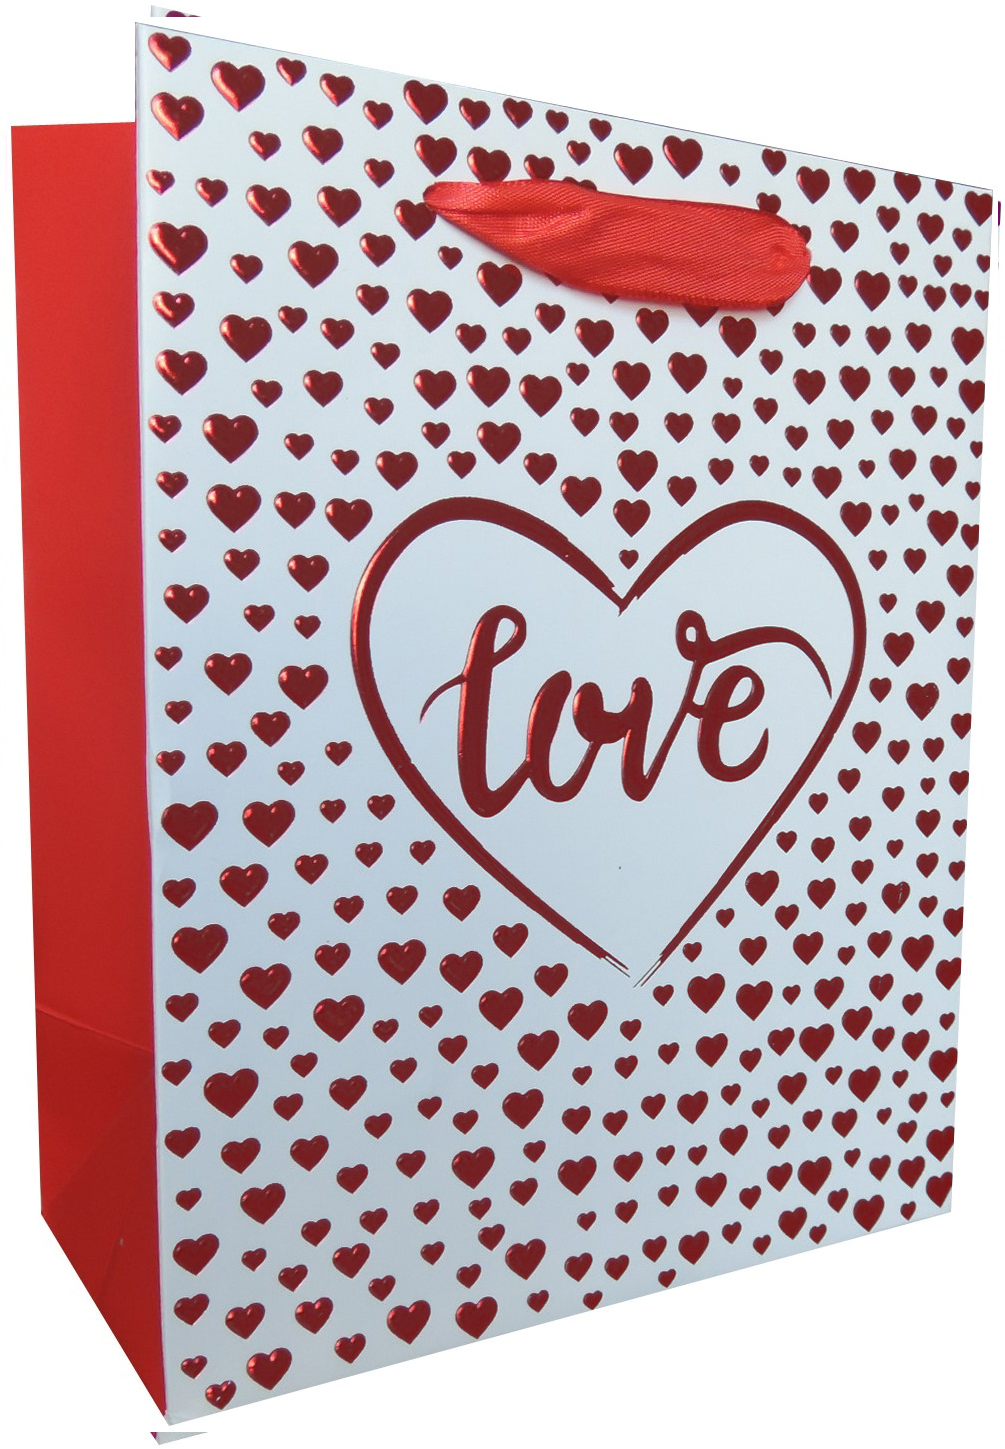 Пакет подарочный  Love, Множество сердец, Красный металлик, 23*18*10 см